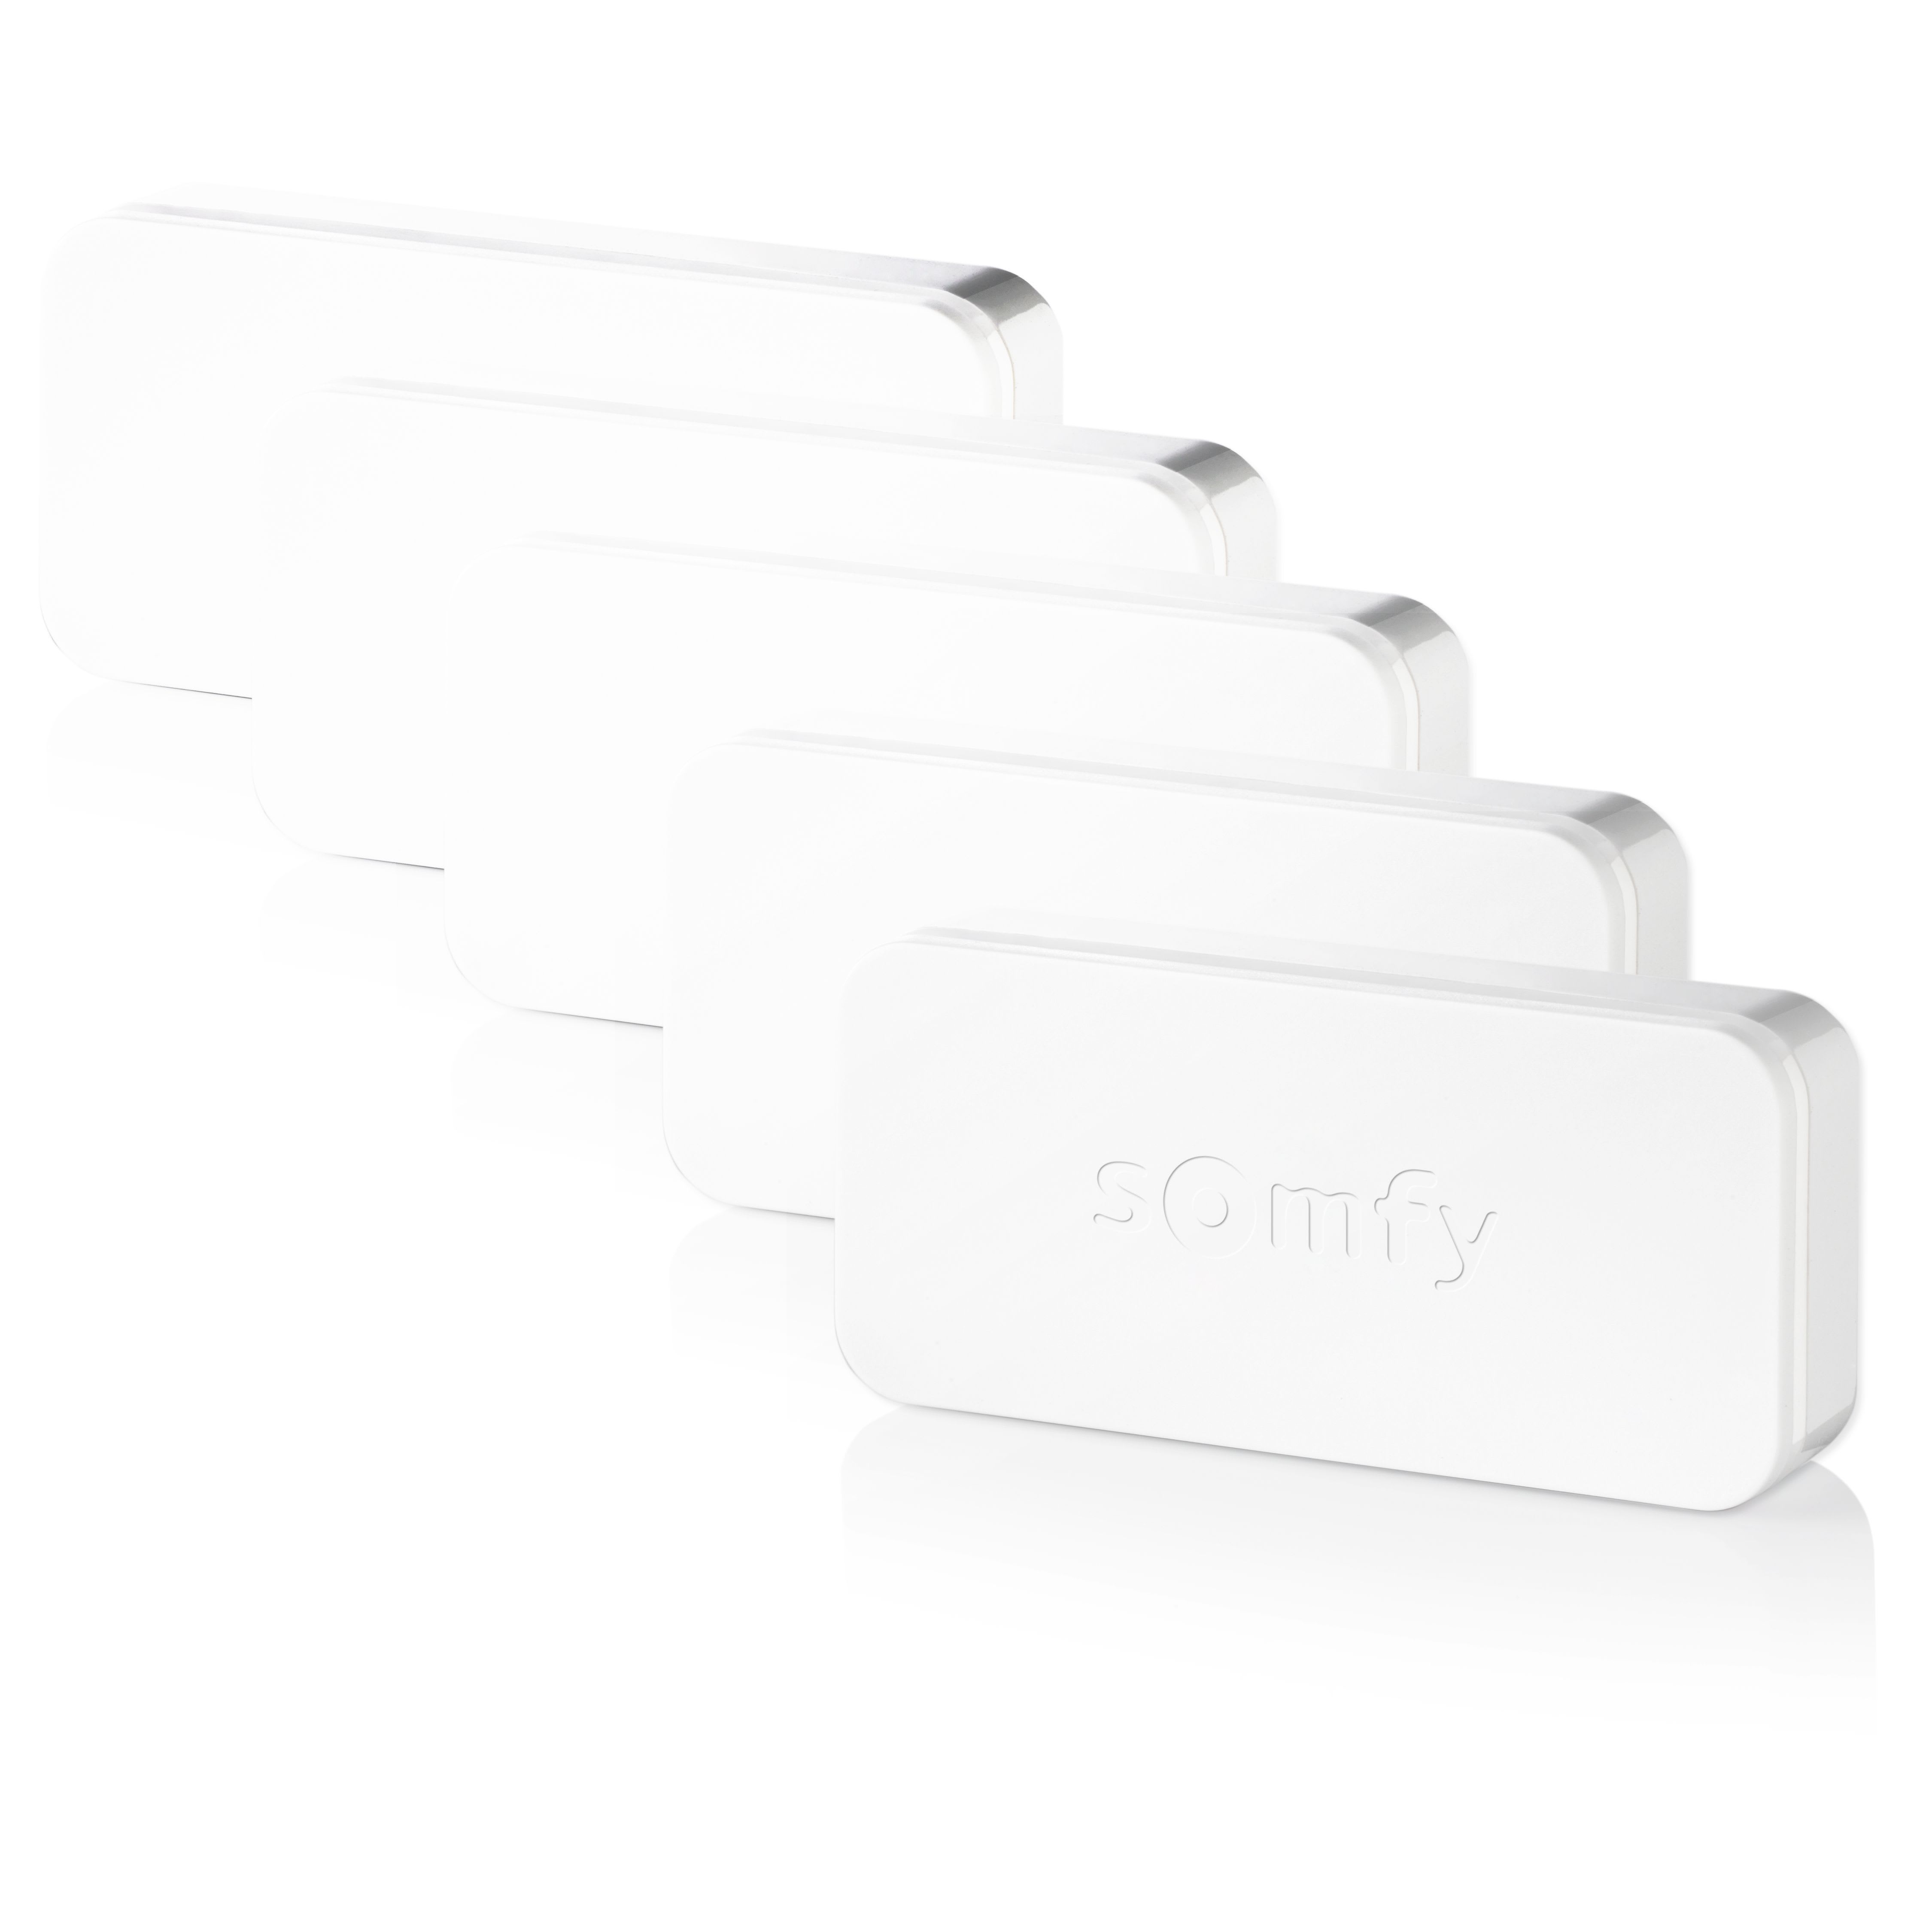 Somfy - Pack 5 détecteurs IntelliTAG® pour alarme connectée Somfy Protect